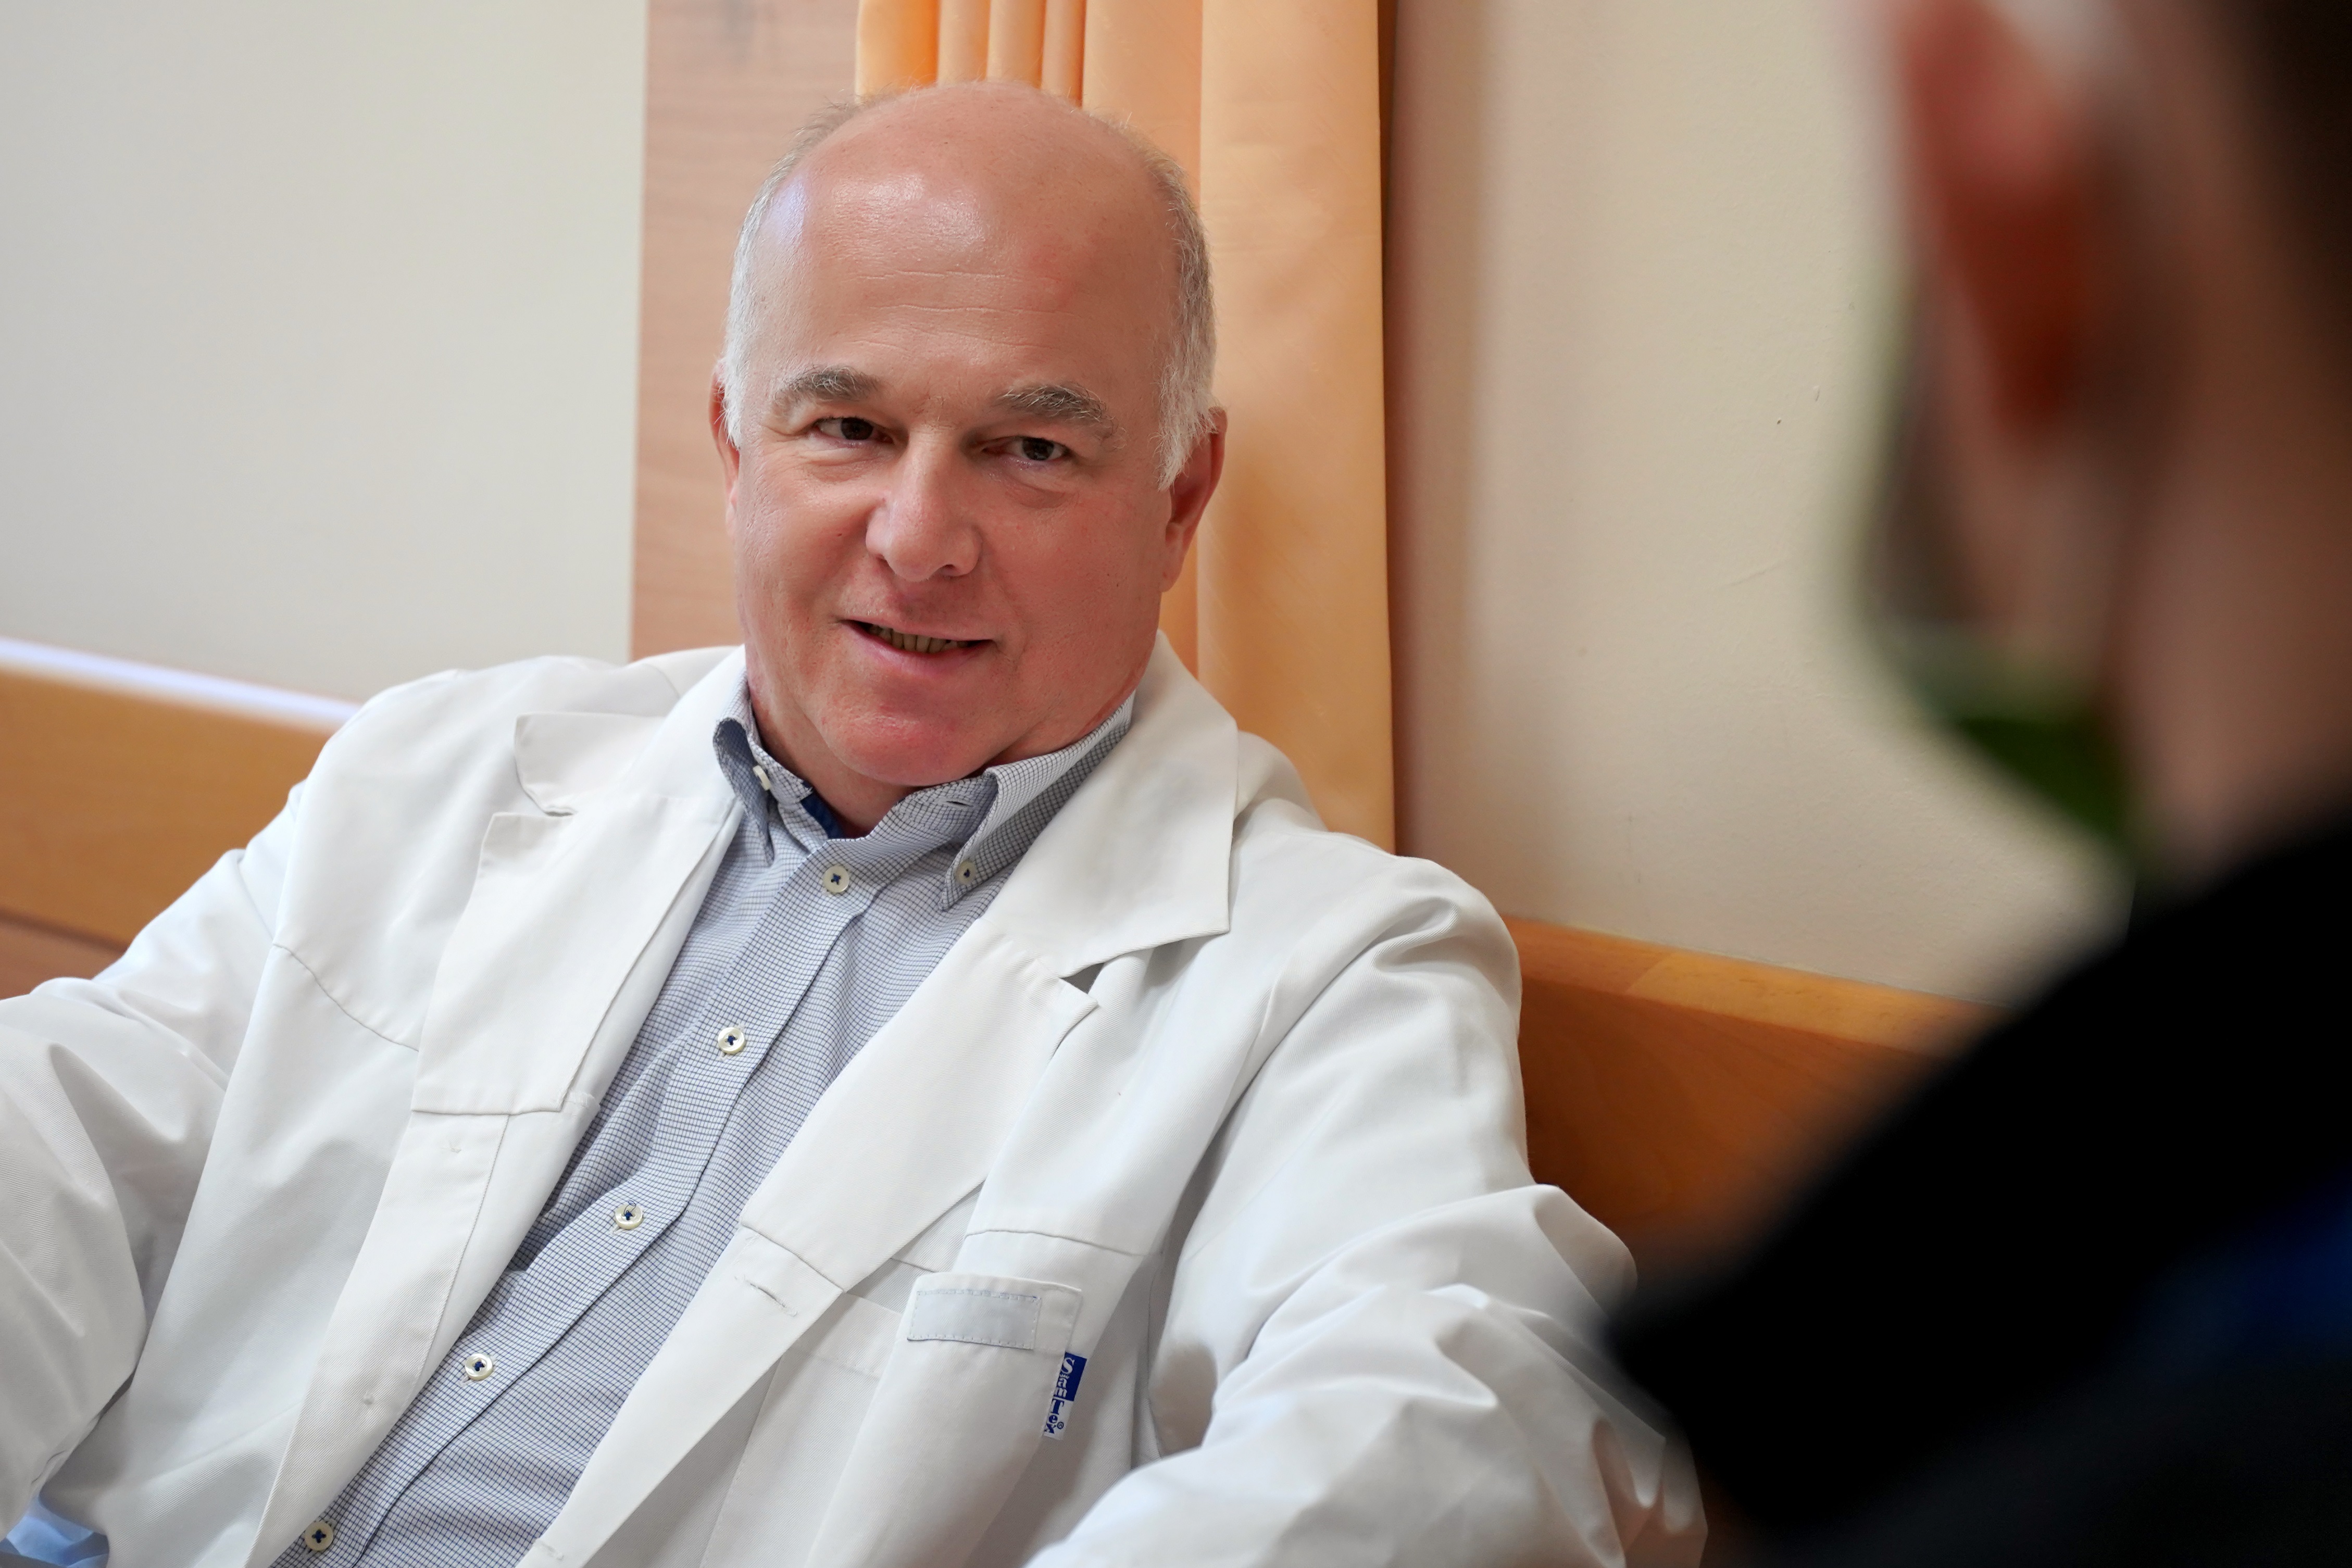 Kortól független ortopédiai problémák - beszélgetés Dr. Udvarhelyi Iván főorvossal